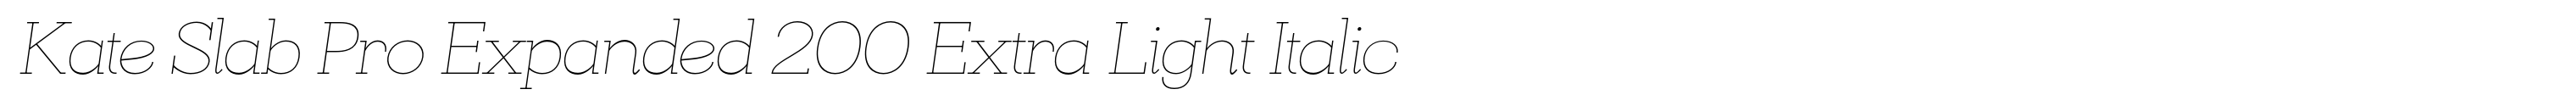 Kate Slab Pro Expanded 200 Extra Light Italic